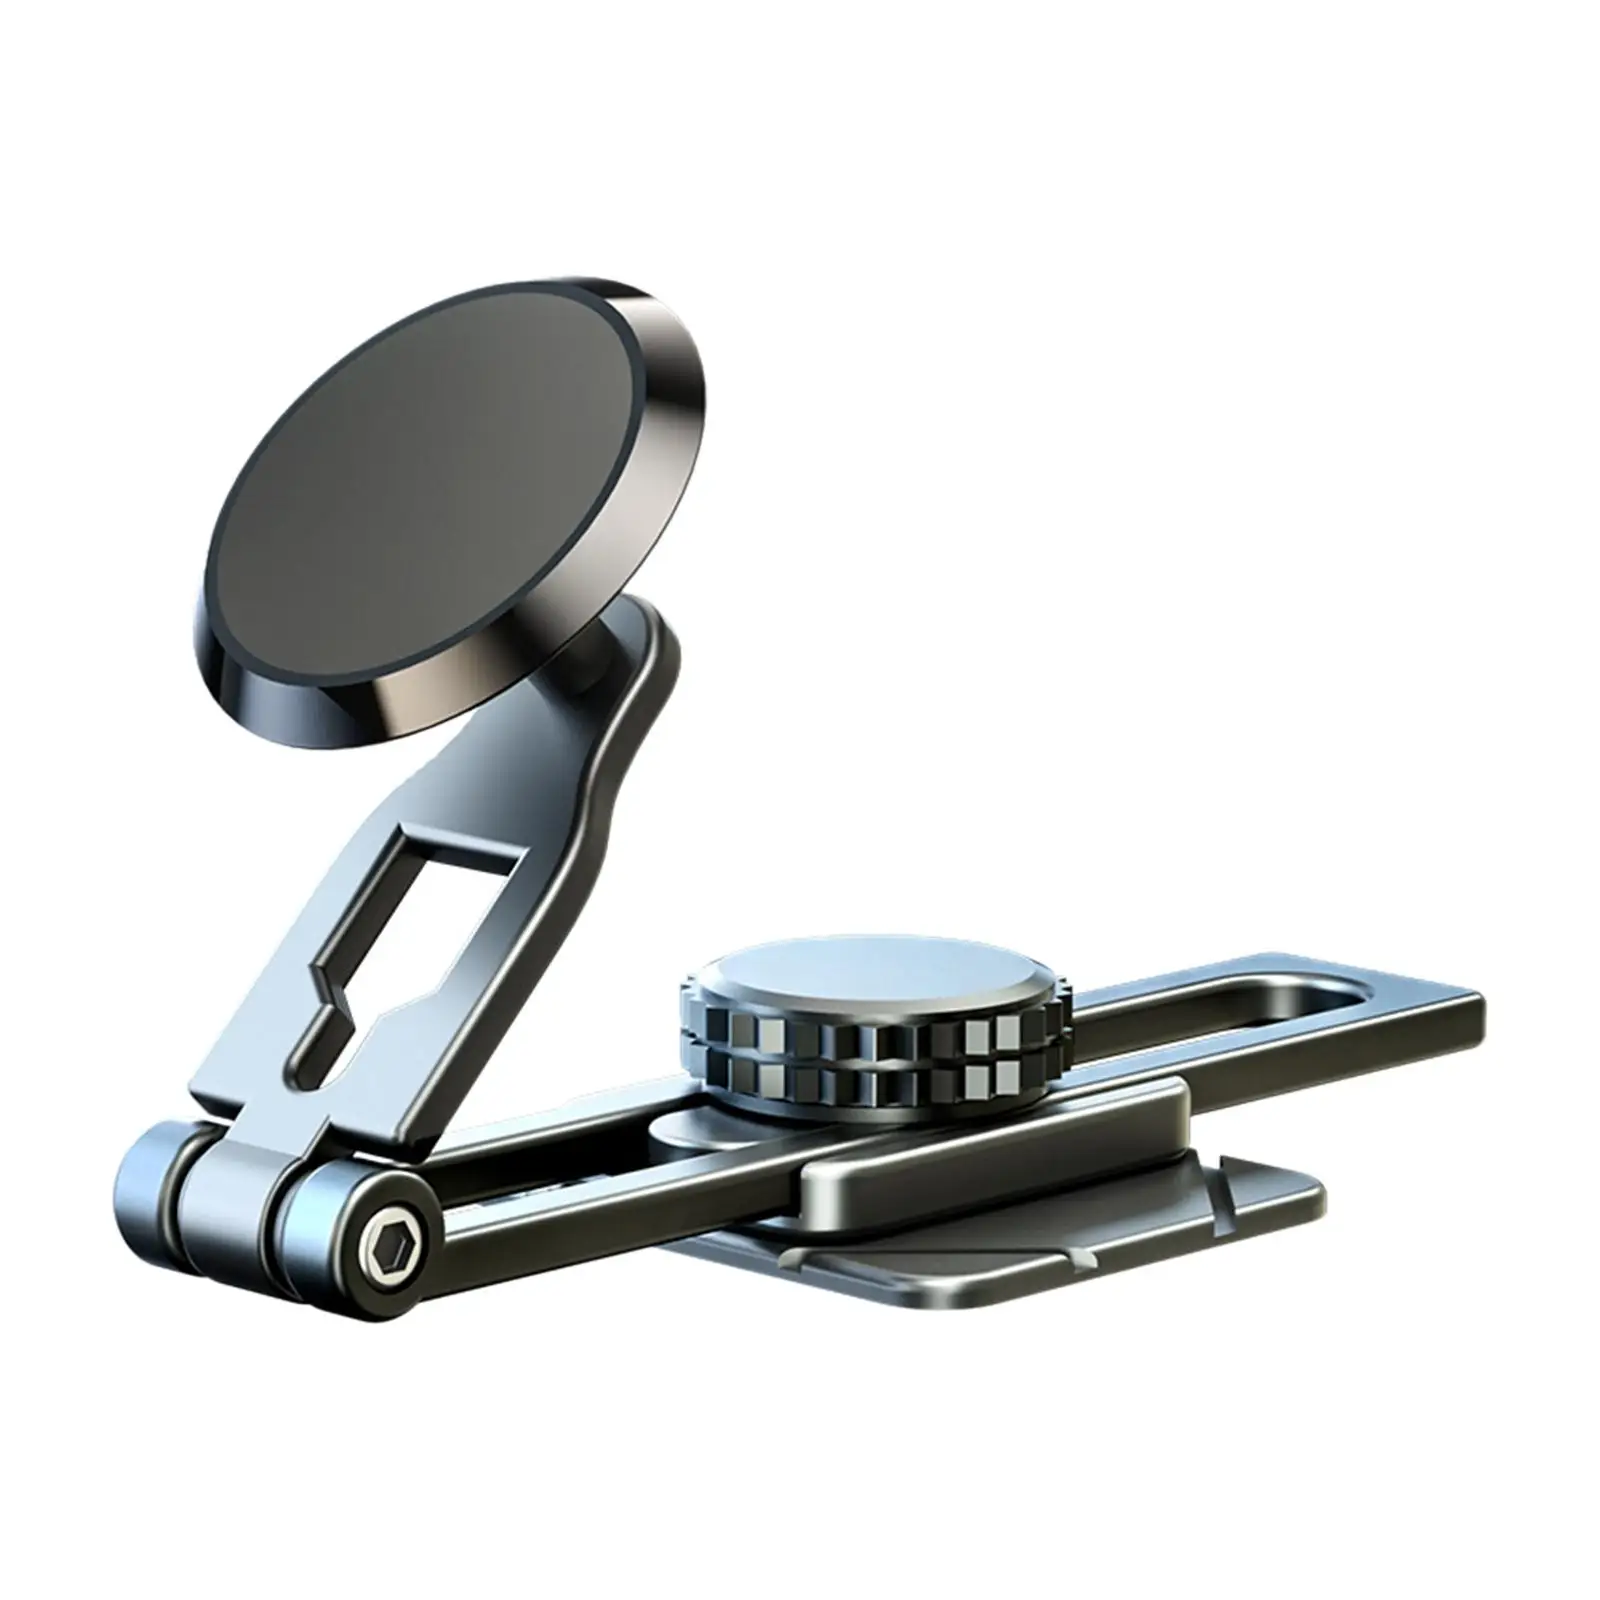 

Автомобильный держатель для телефона портативный алюминиевый сплав регулируемый складной вращающийся на 360 градусов для большинства транспортных средств держатель для сотового телефона